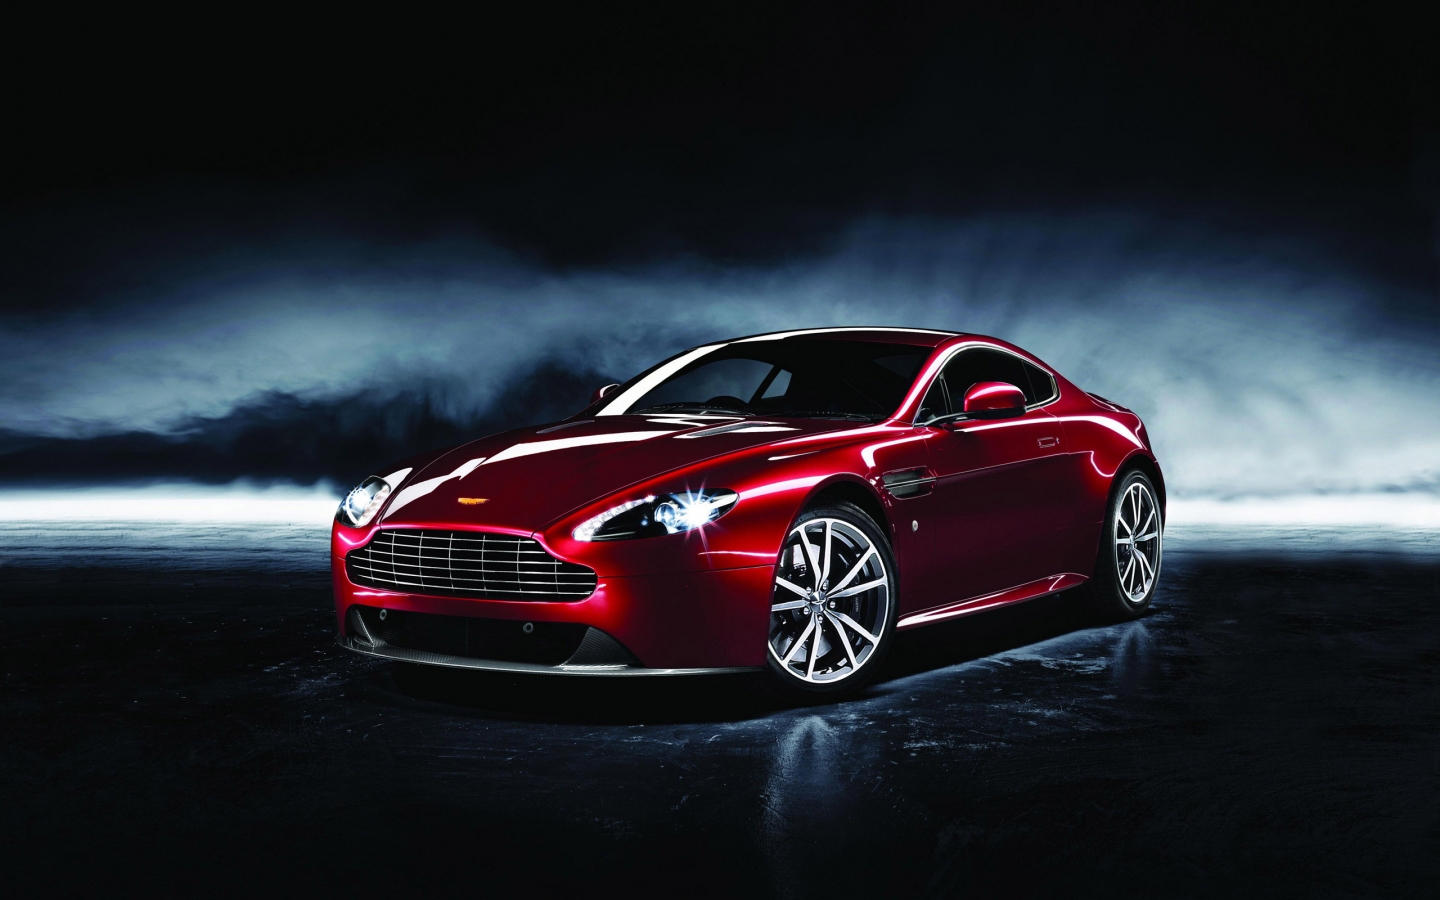 2013 Aston Martin Dragon for 1440 x 900 widescreen resolution